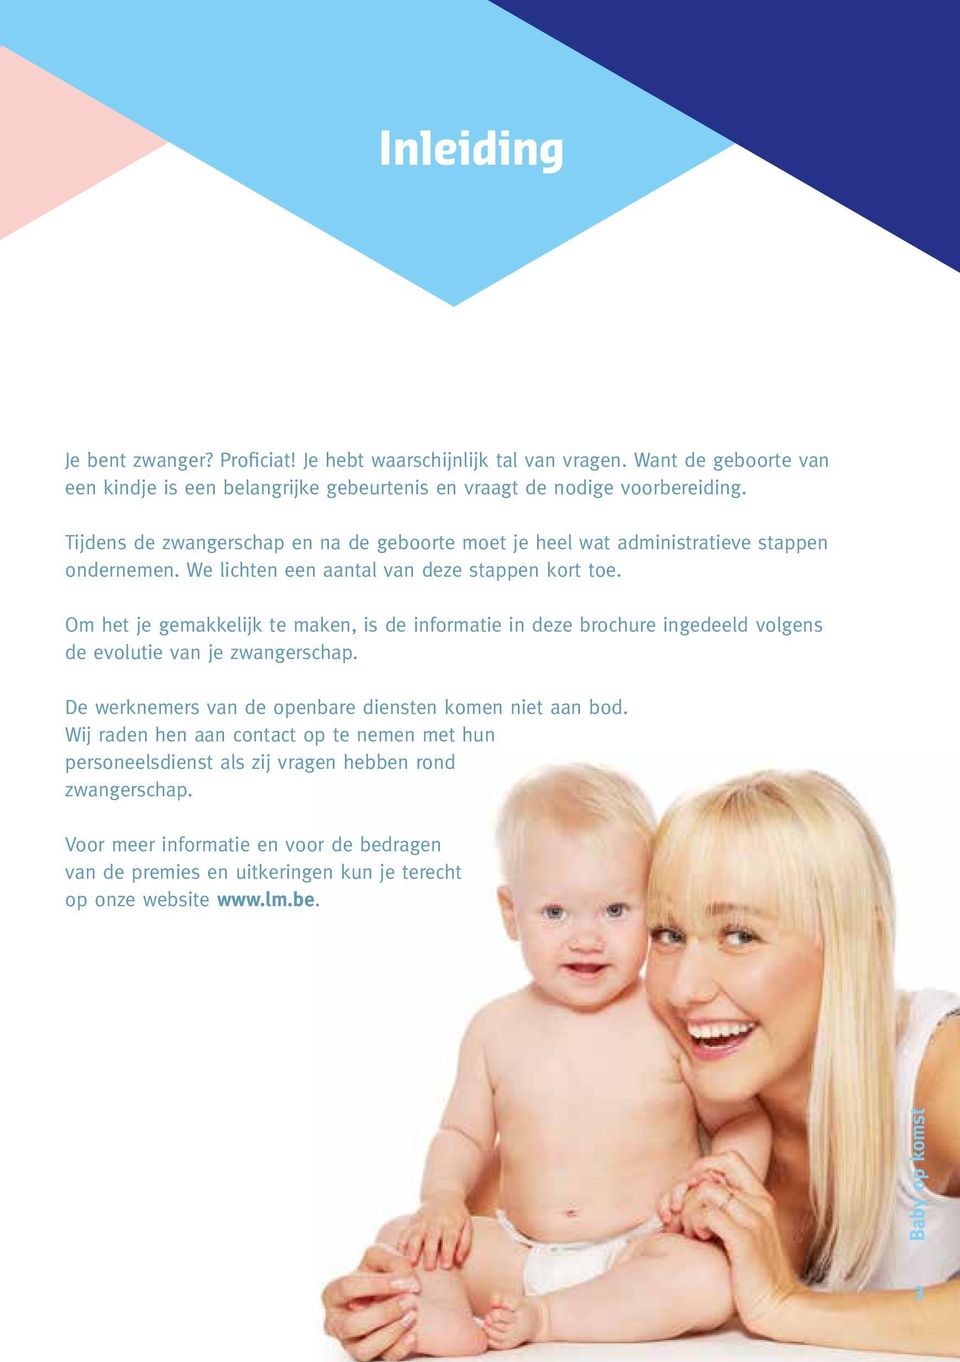 Om het je gemakkelijk te maken, is de informatie in deze brochure ingedeeld volgens de evolutie van je zwangerschap. De werknemers van de openbare diensten komen niet aan bod.